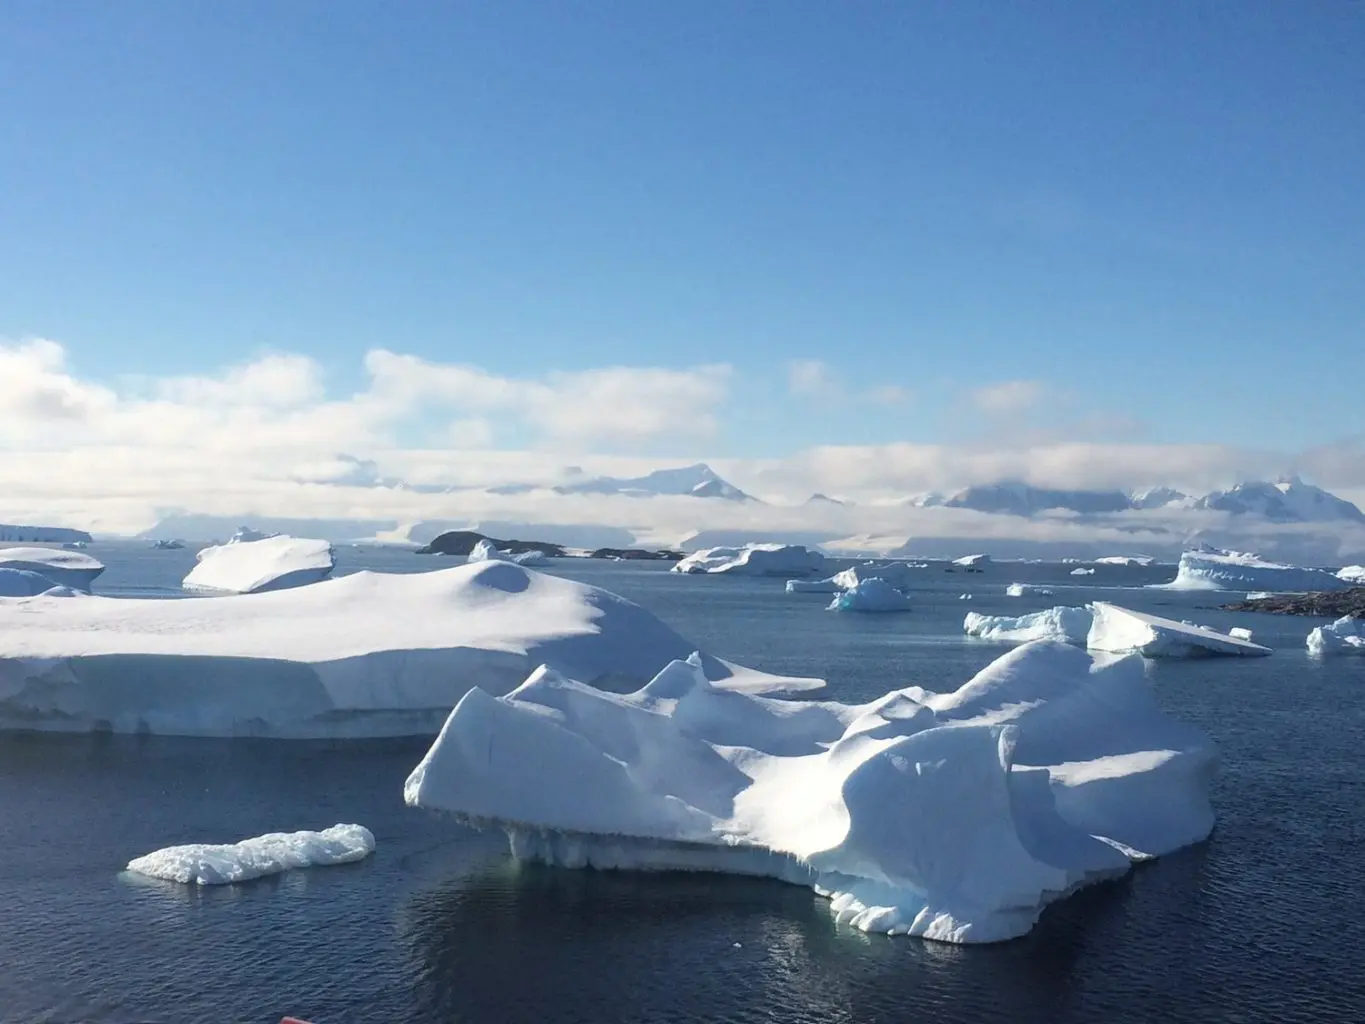 Looking into ice: understanding Antarctica’s glaciers